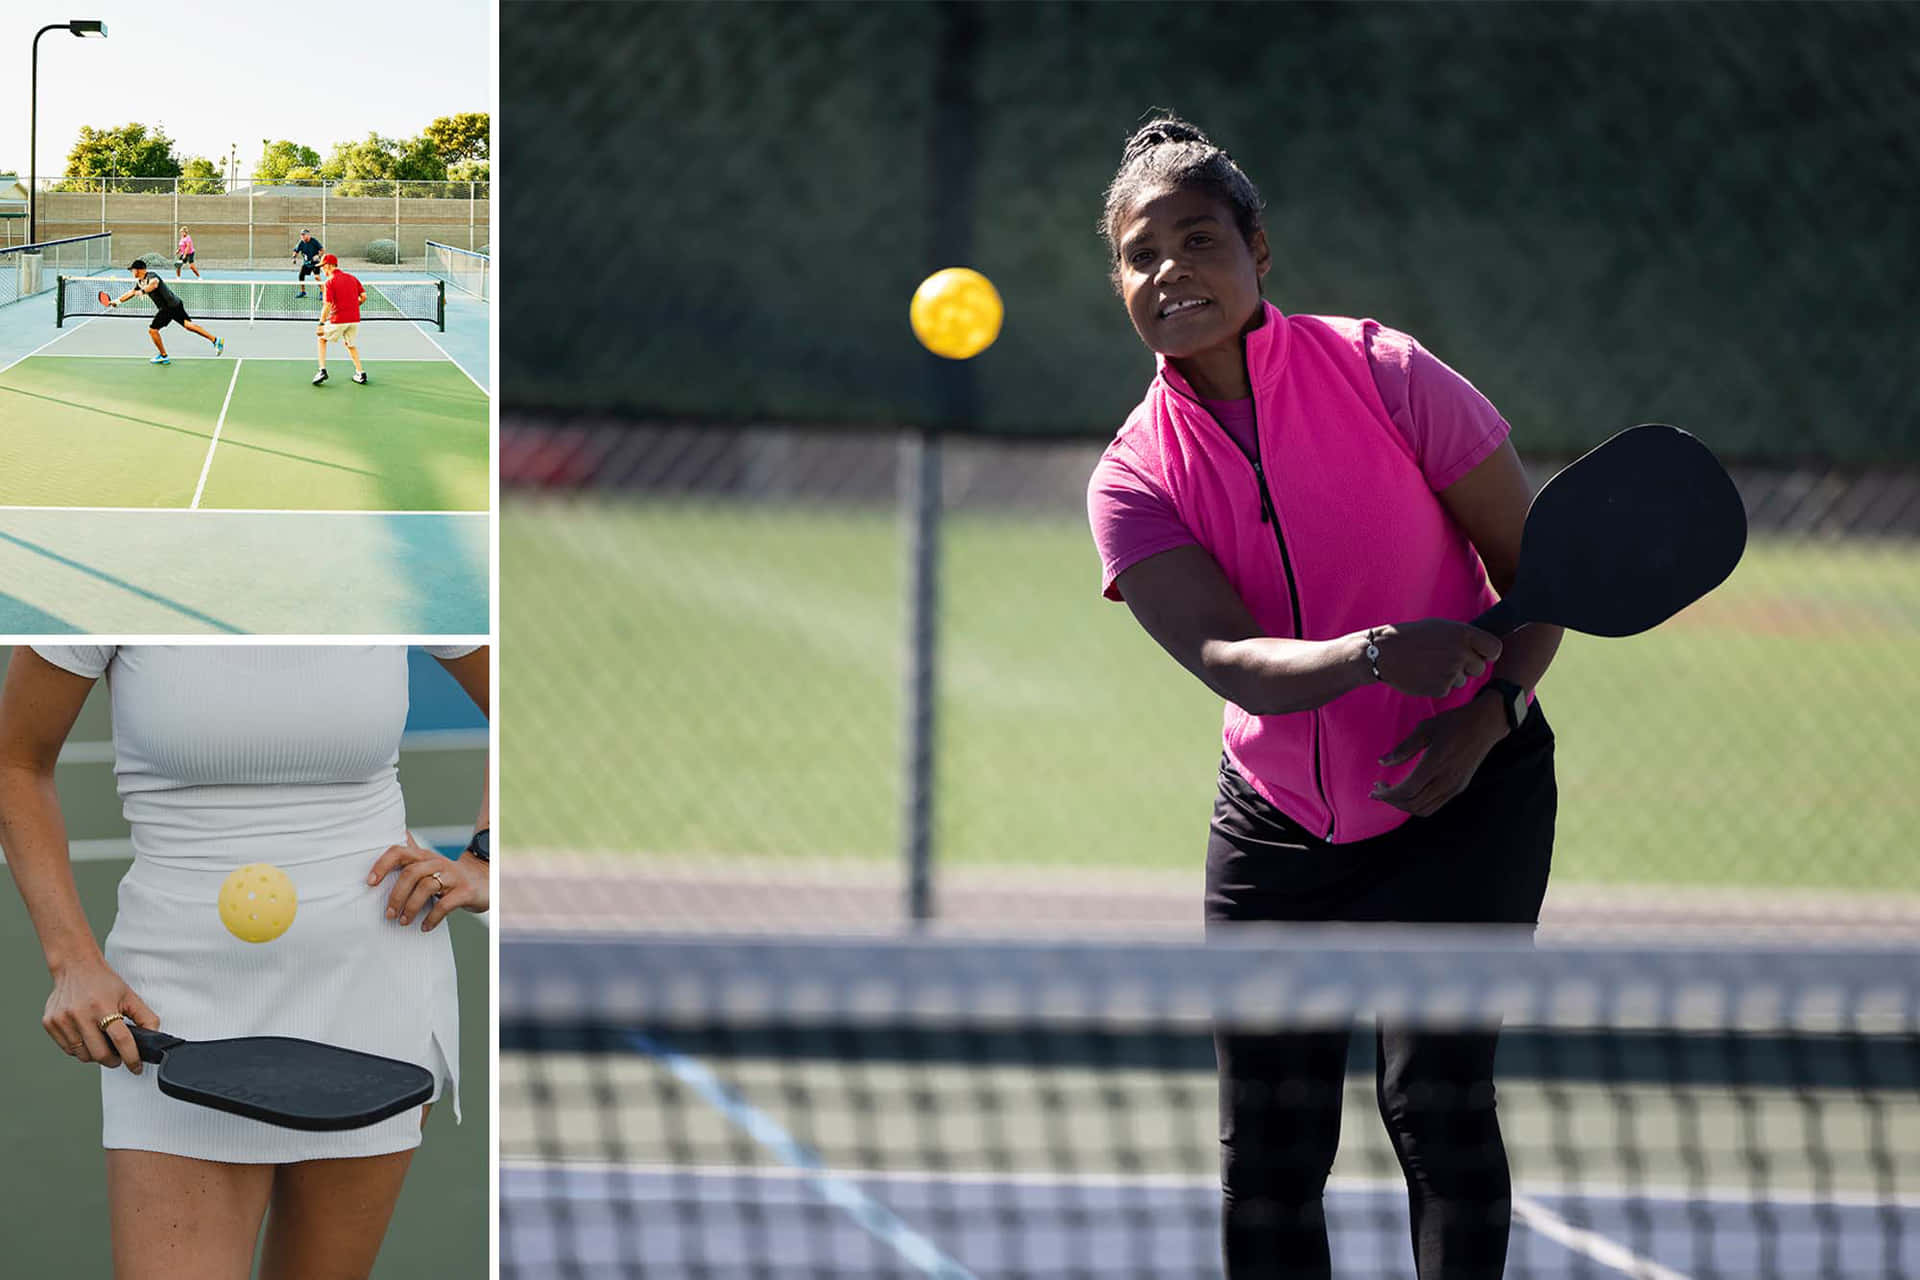 Uncollage De Imágenes De Mujeres Jugando Tenis